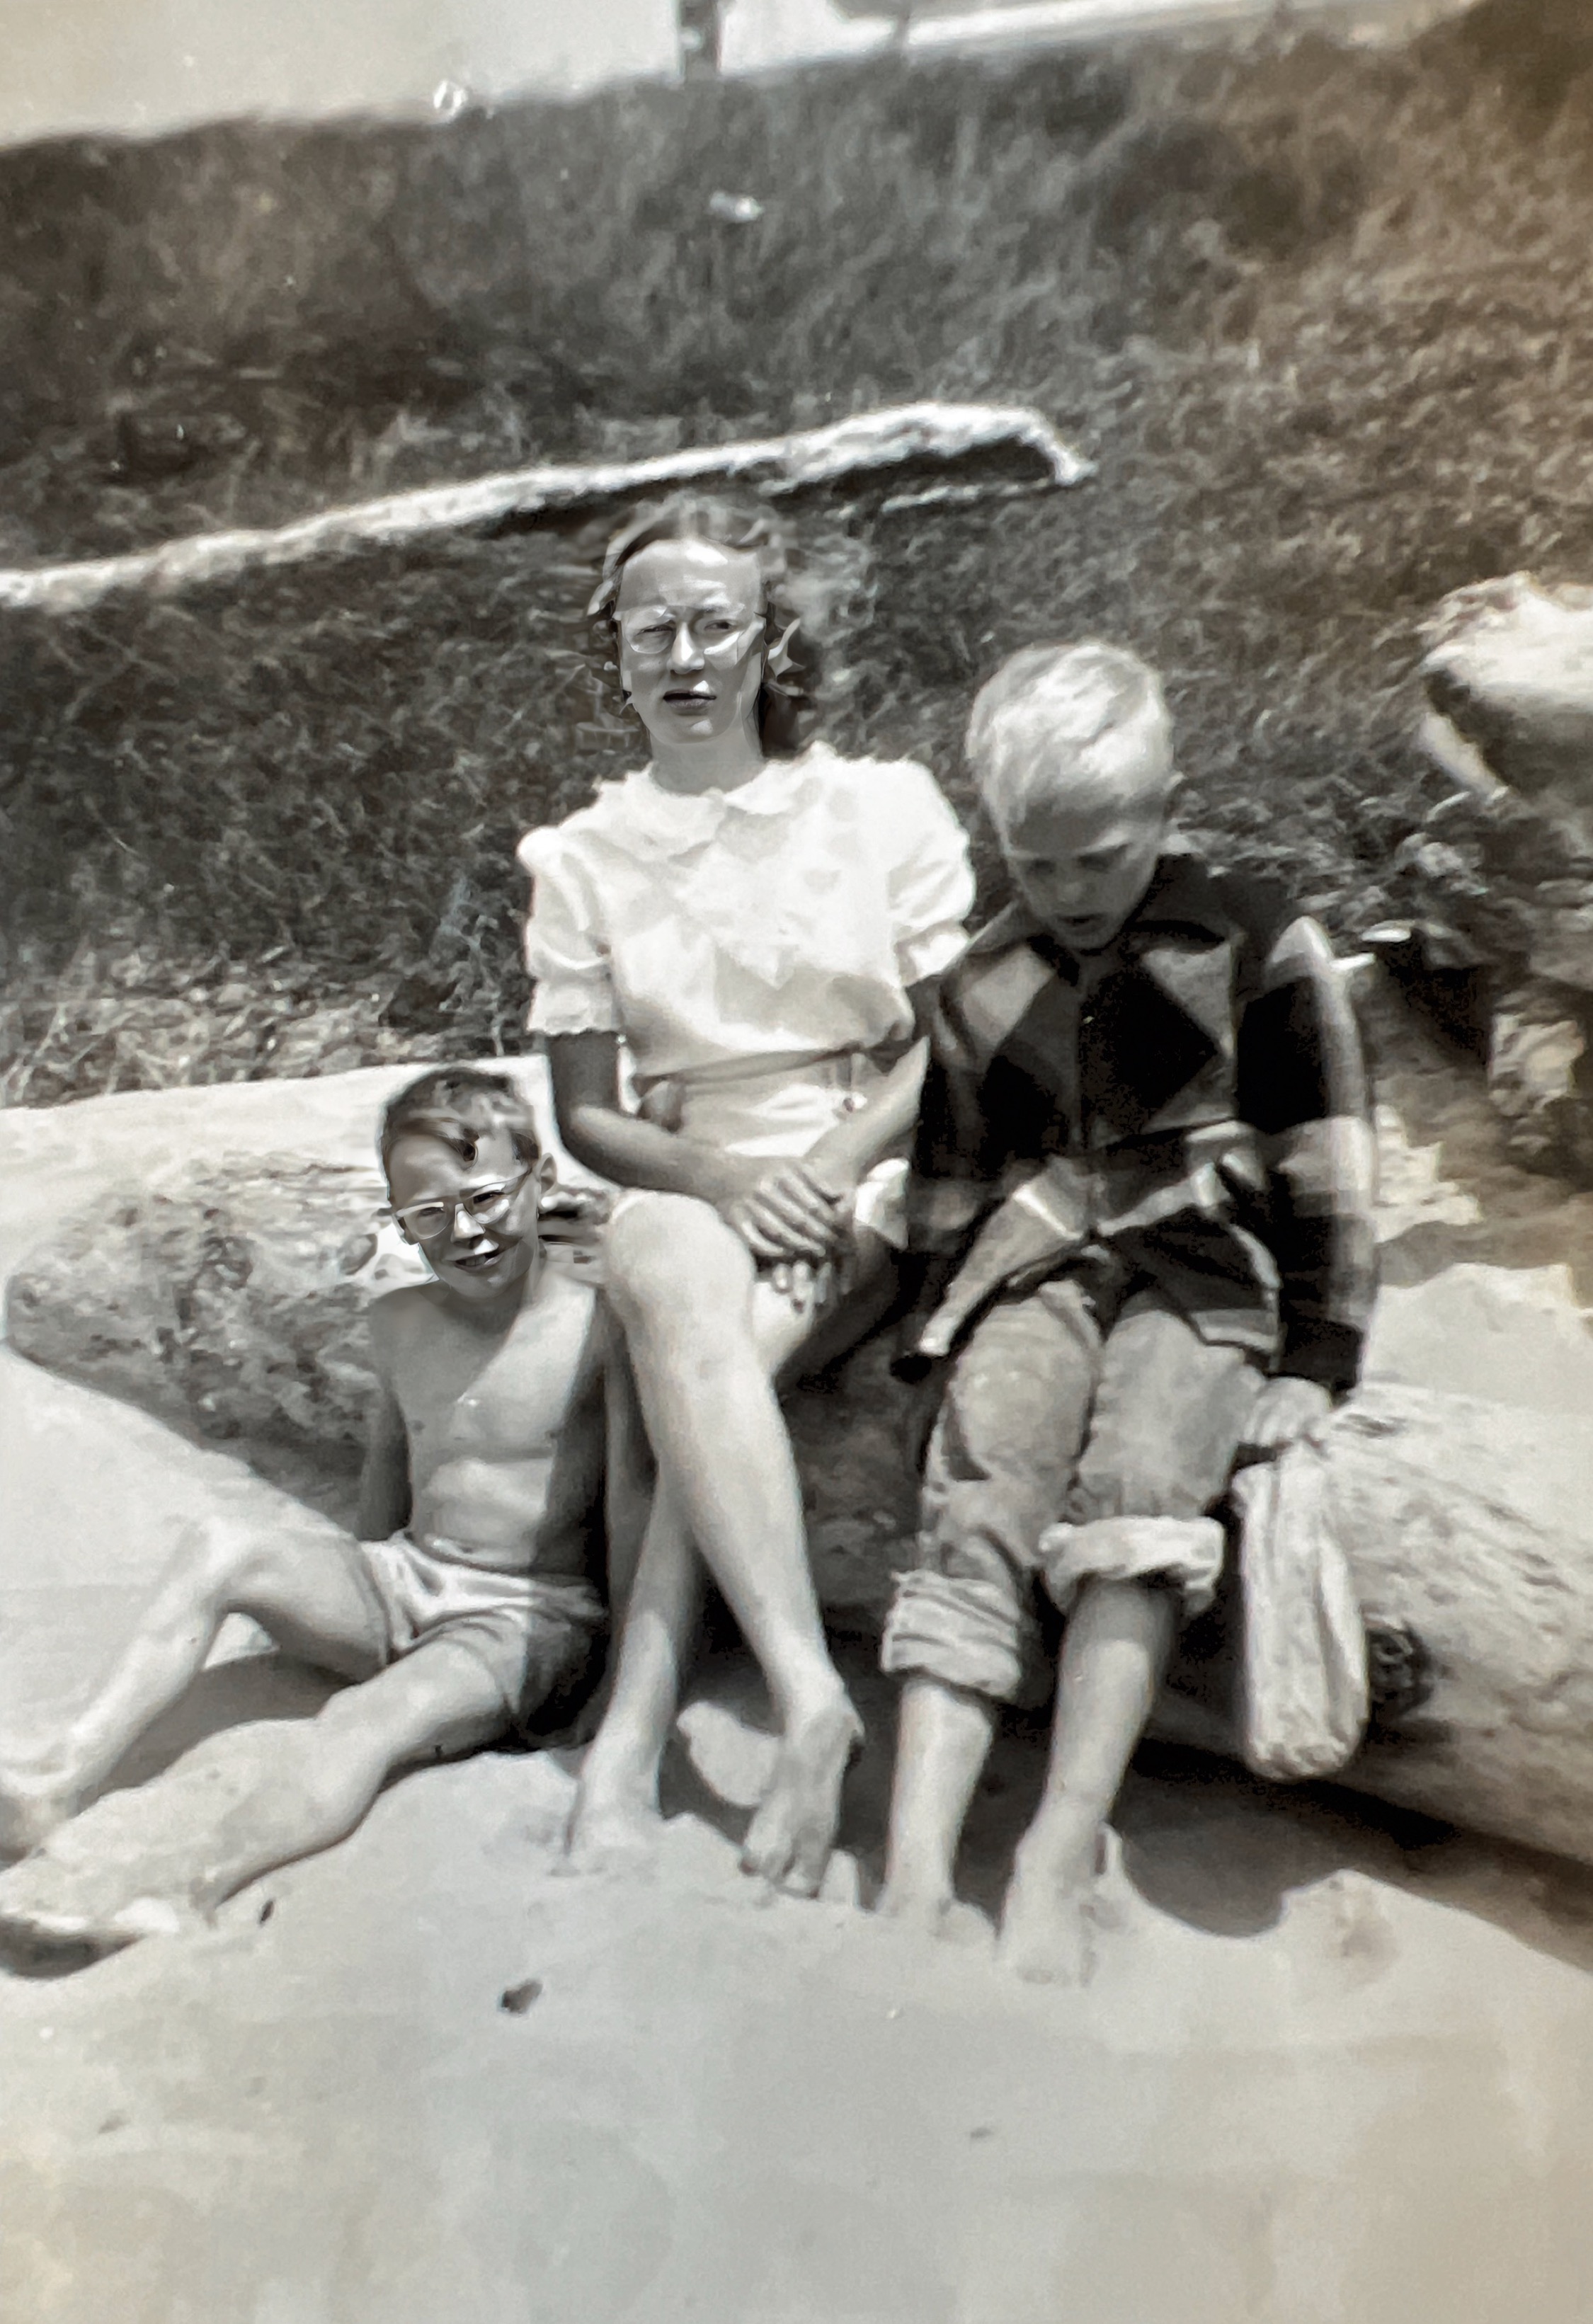 David, Sue Ann, and Richard at the Beach, July 4, 1950